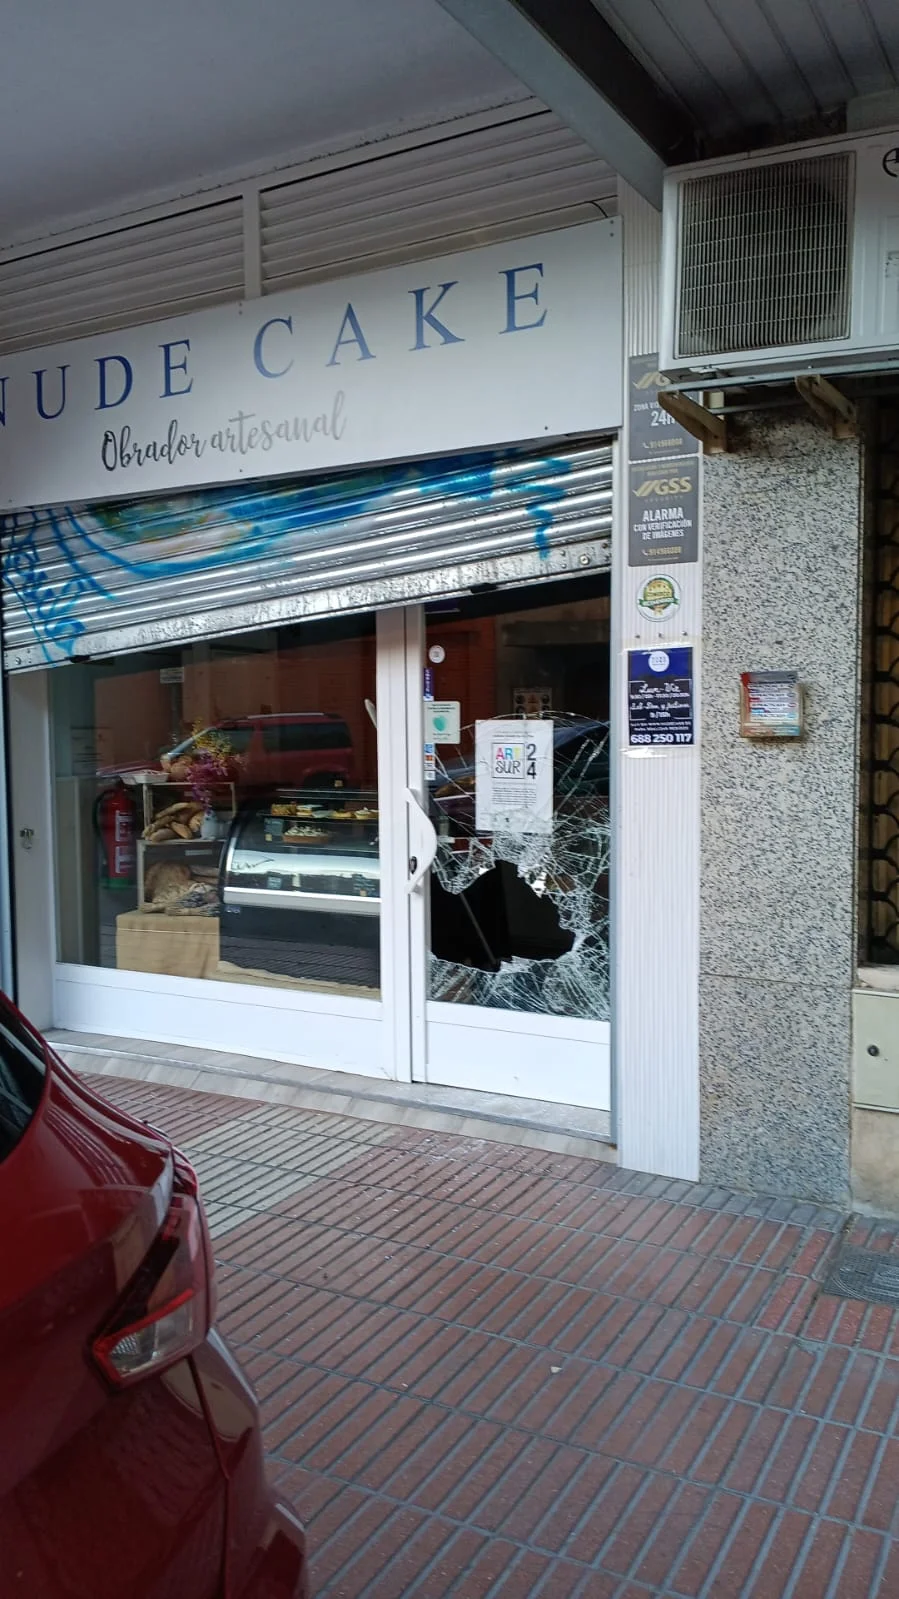 Detenida la pareja que entró a robar cinco veces en la pastelería Nude Cake de Alcorcón